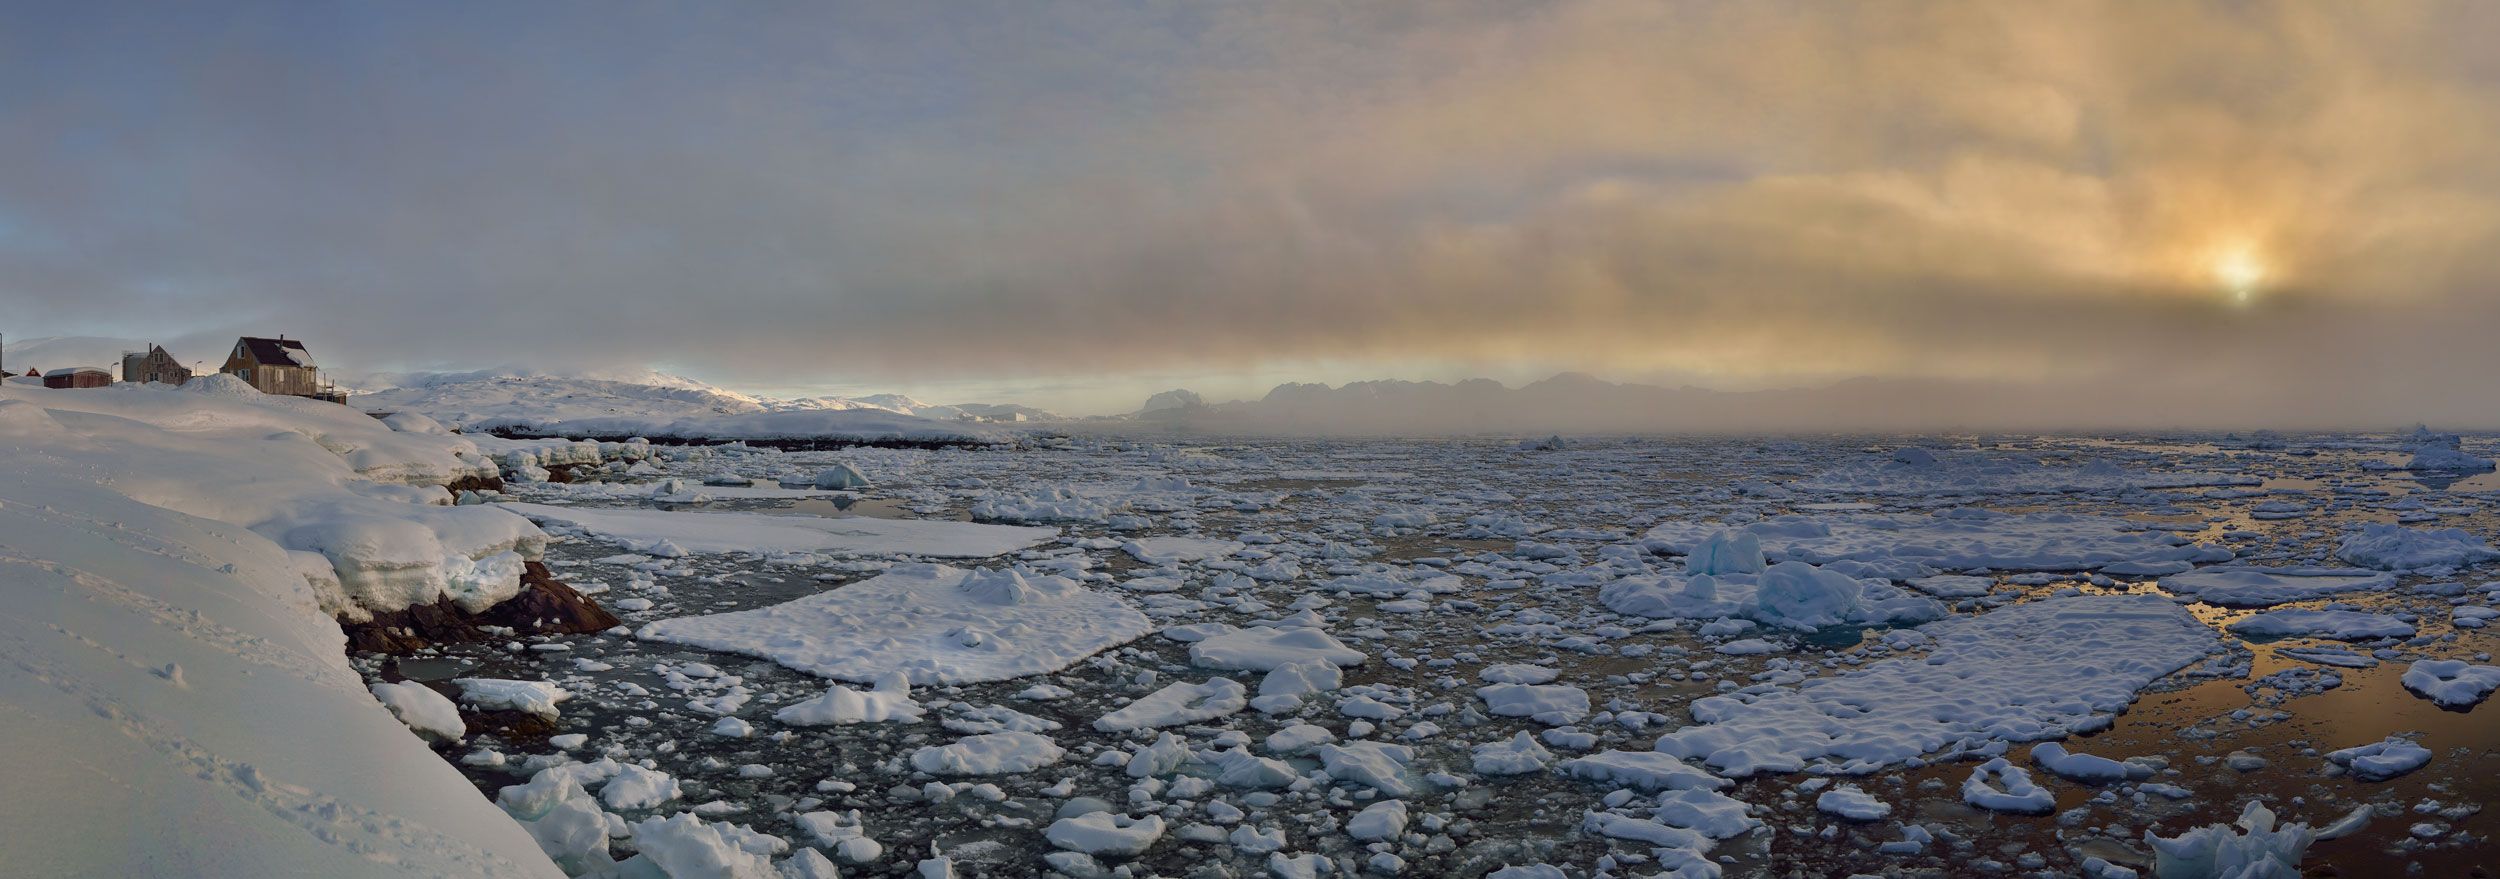 Гренландия, Закат пейзаж, Остров Гренландия панорама, Тассилаг, Анна Яценко